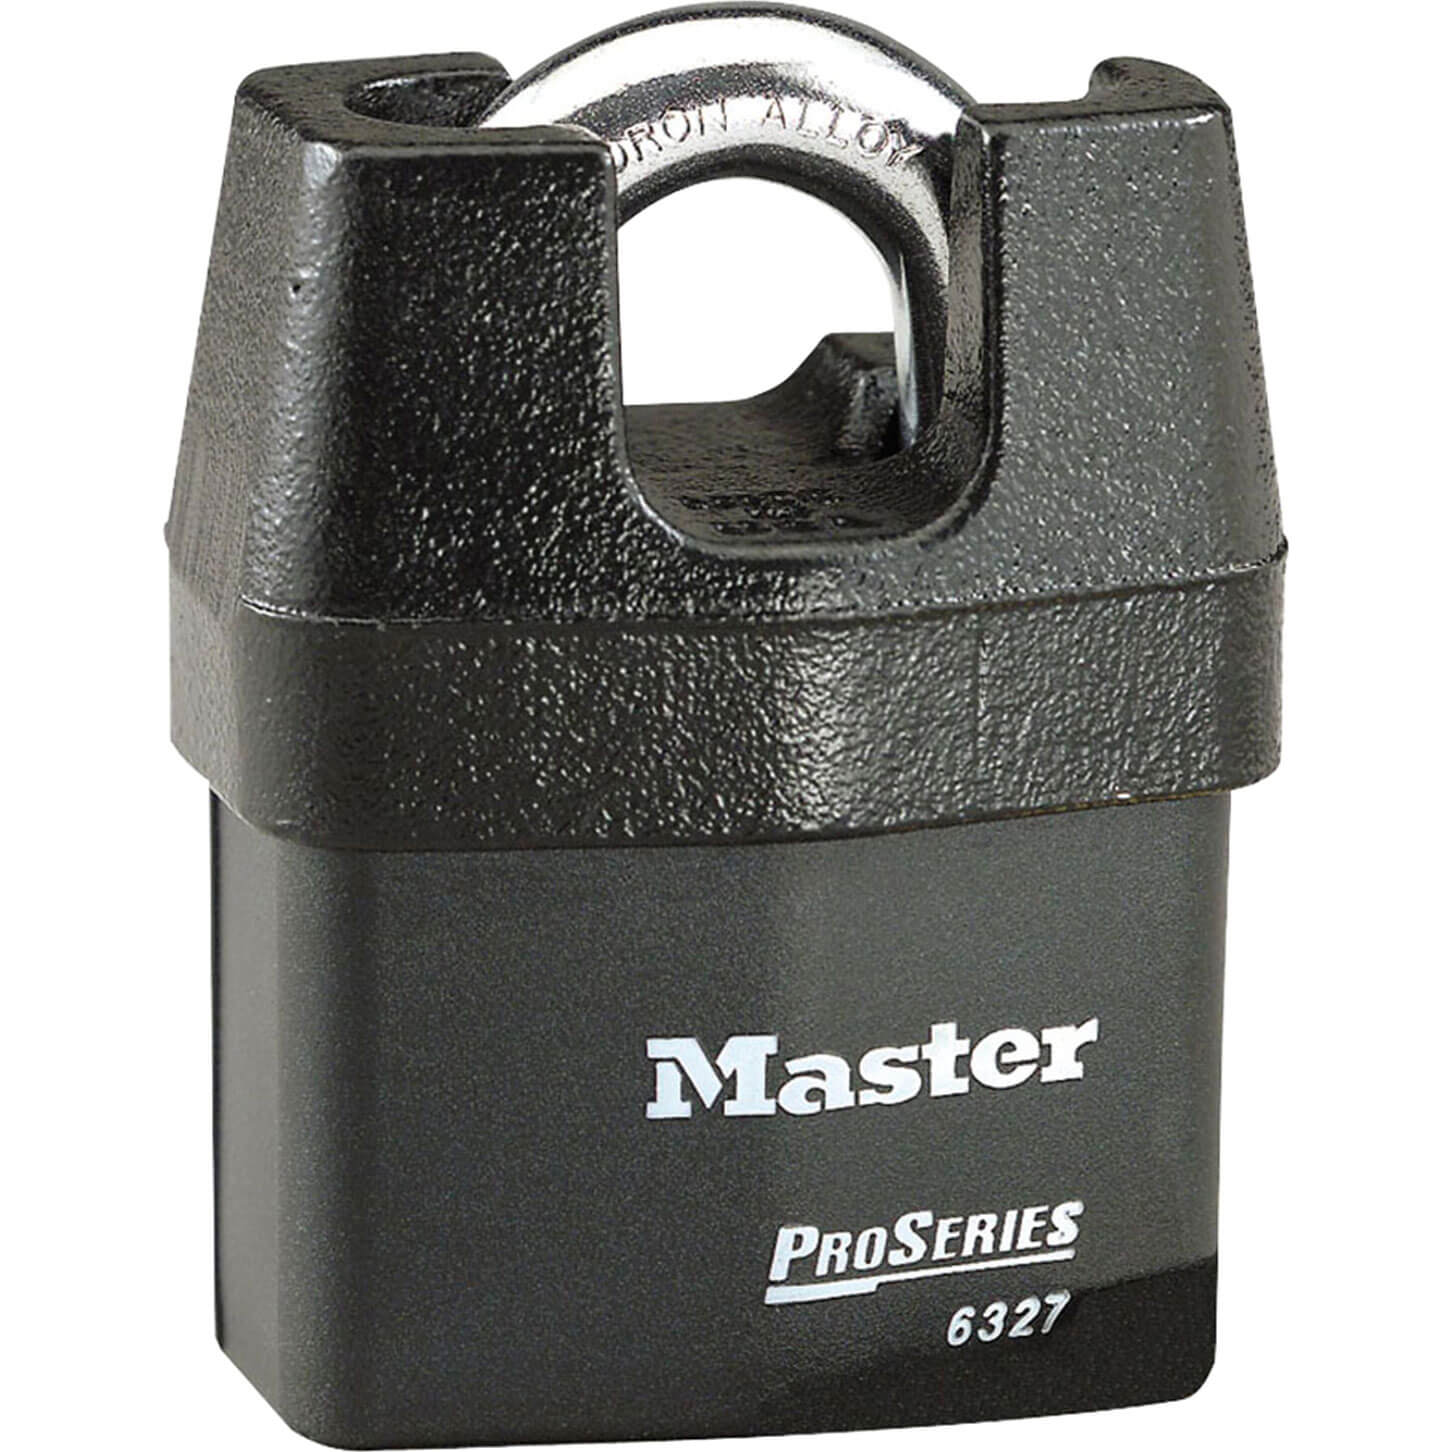 Masterlock Pro Series Padlock Closed Shackle Keyed Alike 67mm Standard